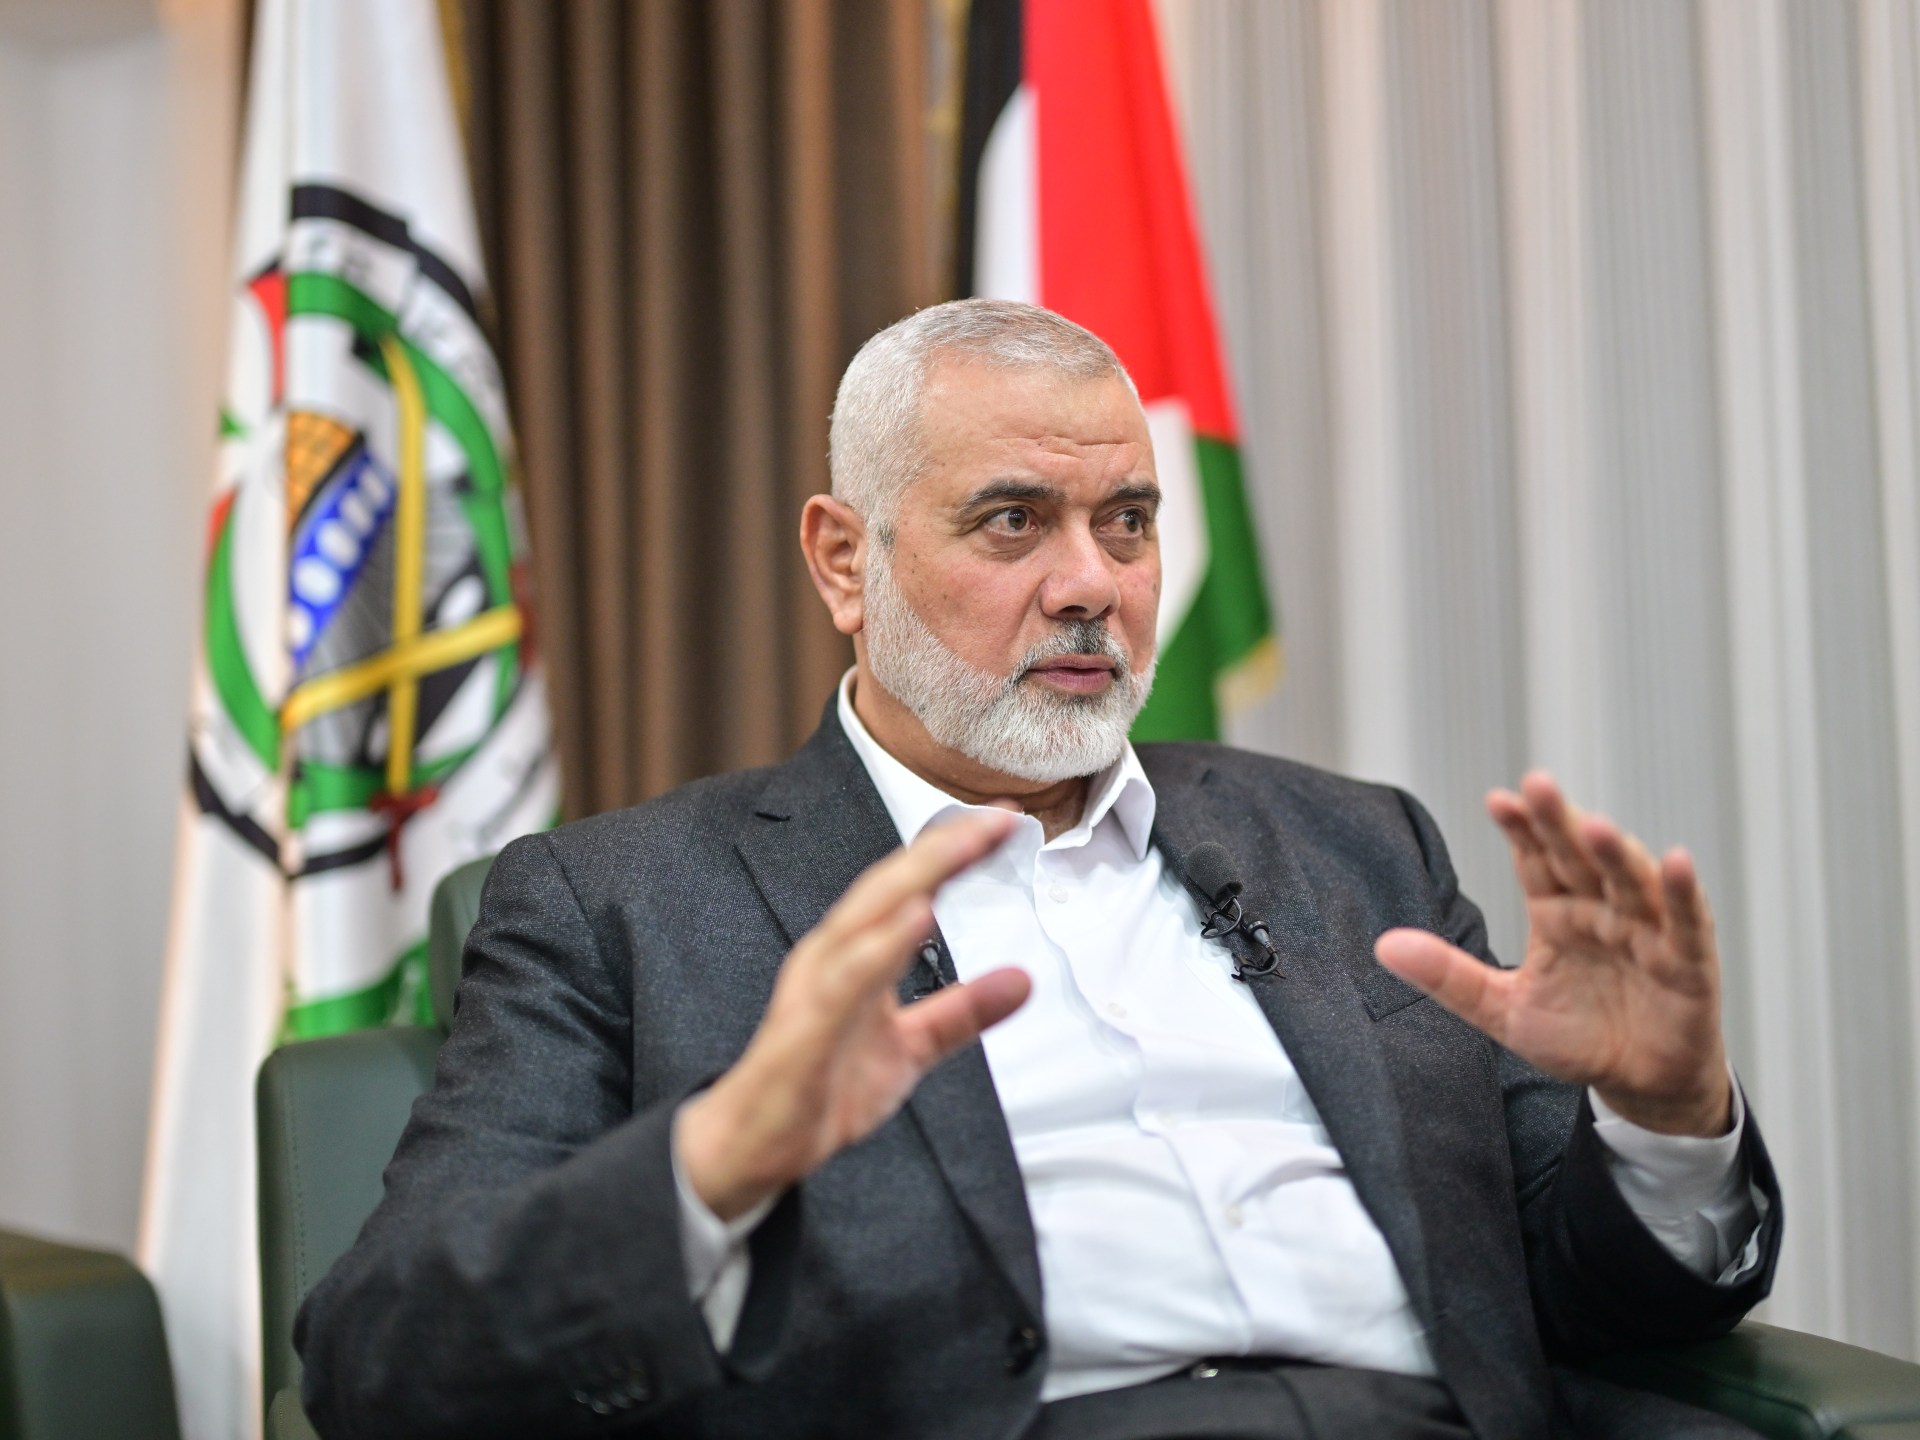 هنية: وفد حماس يتوجه إلى مصر قريبا لاستكمال المباحثات | أخبار – البوكس نيوز